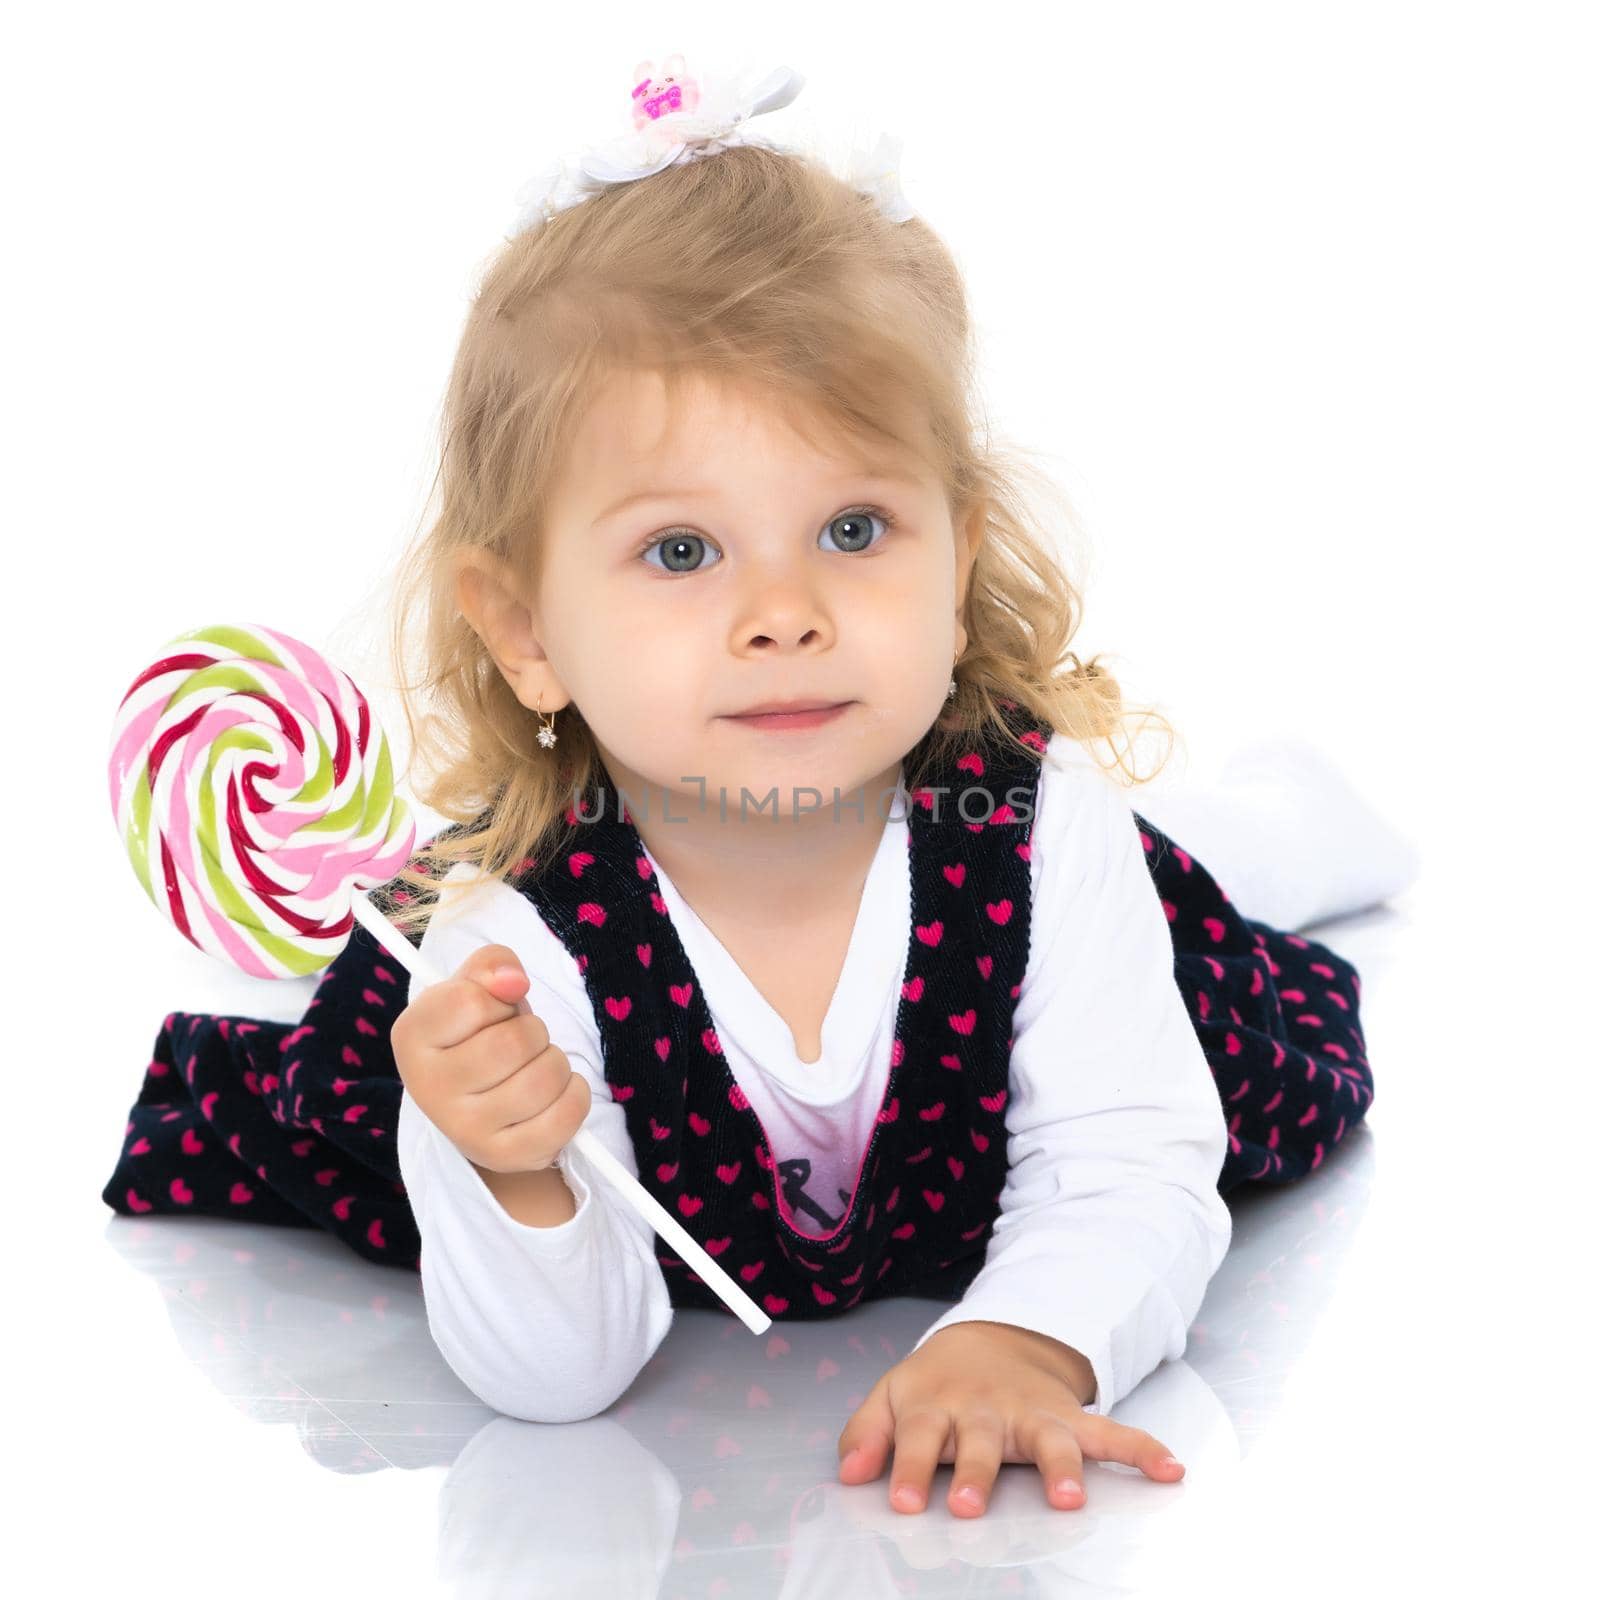 A little girl licks a candy on a stick. by kolesnikov_studio